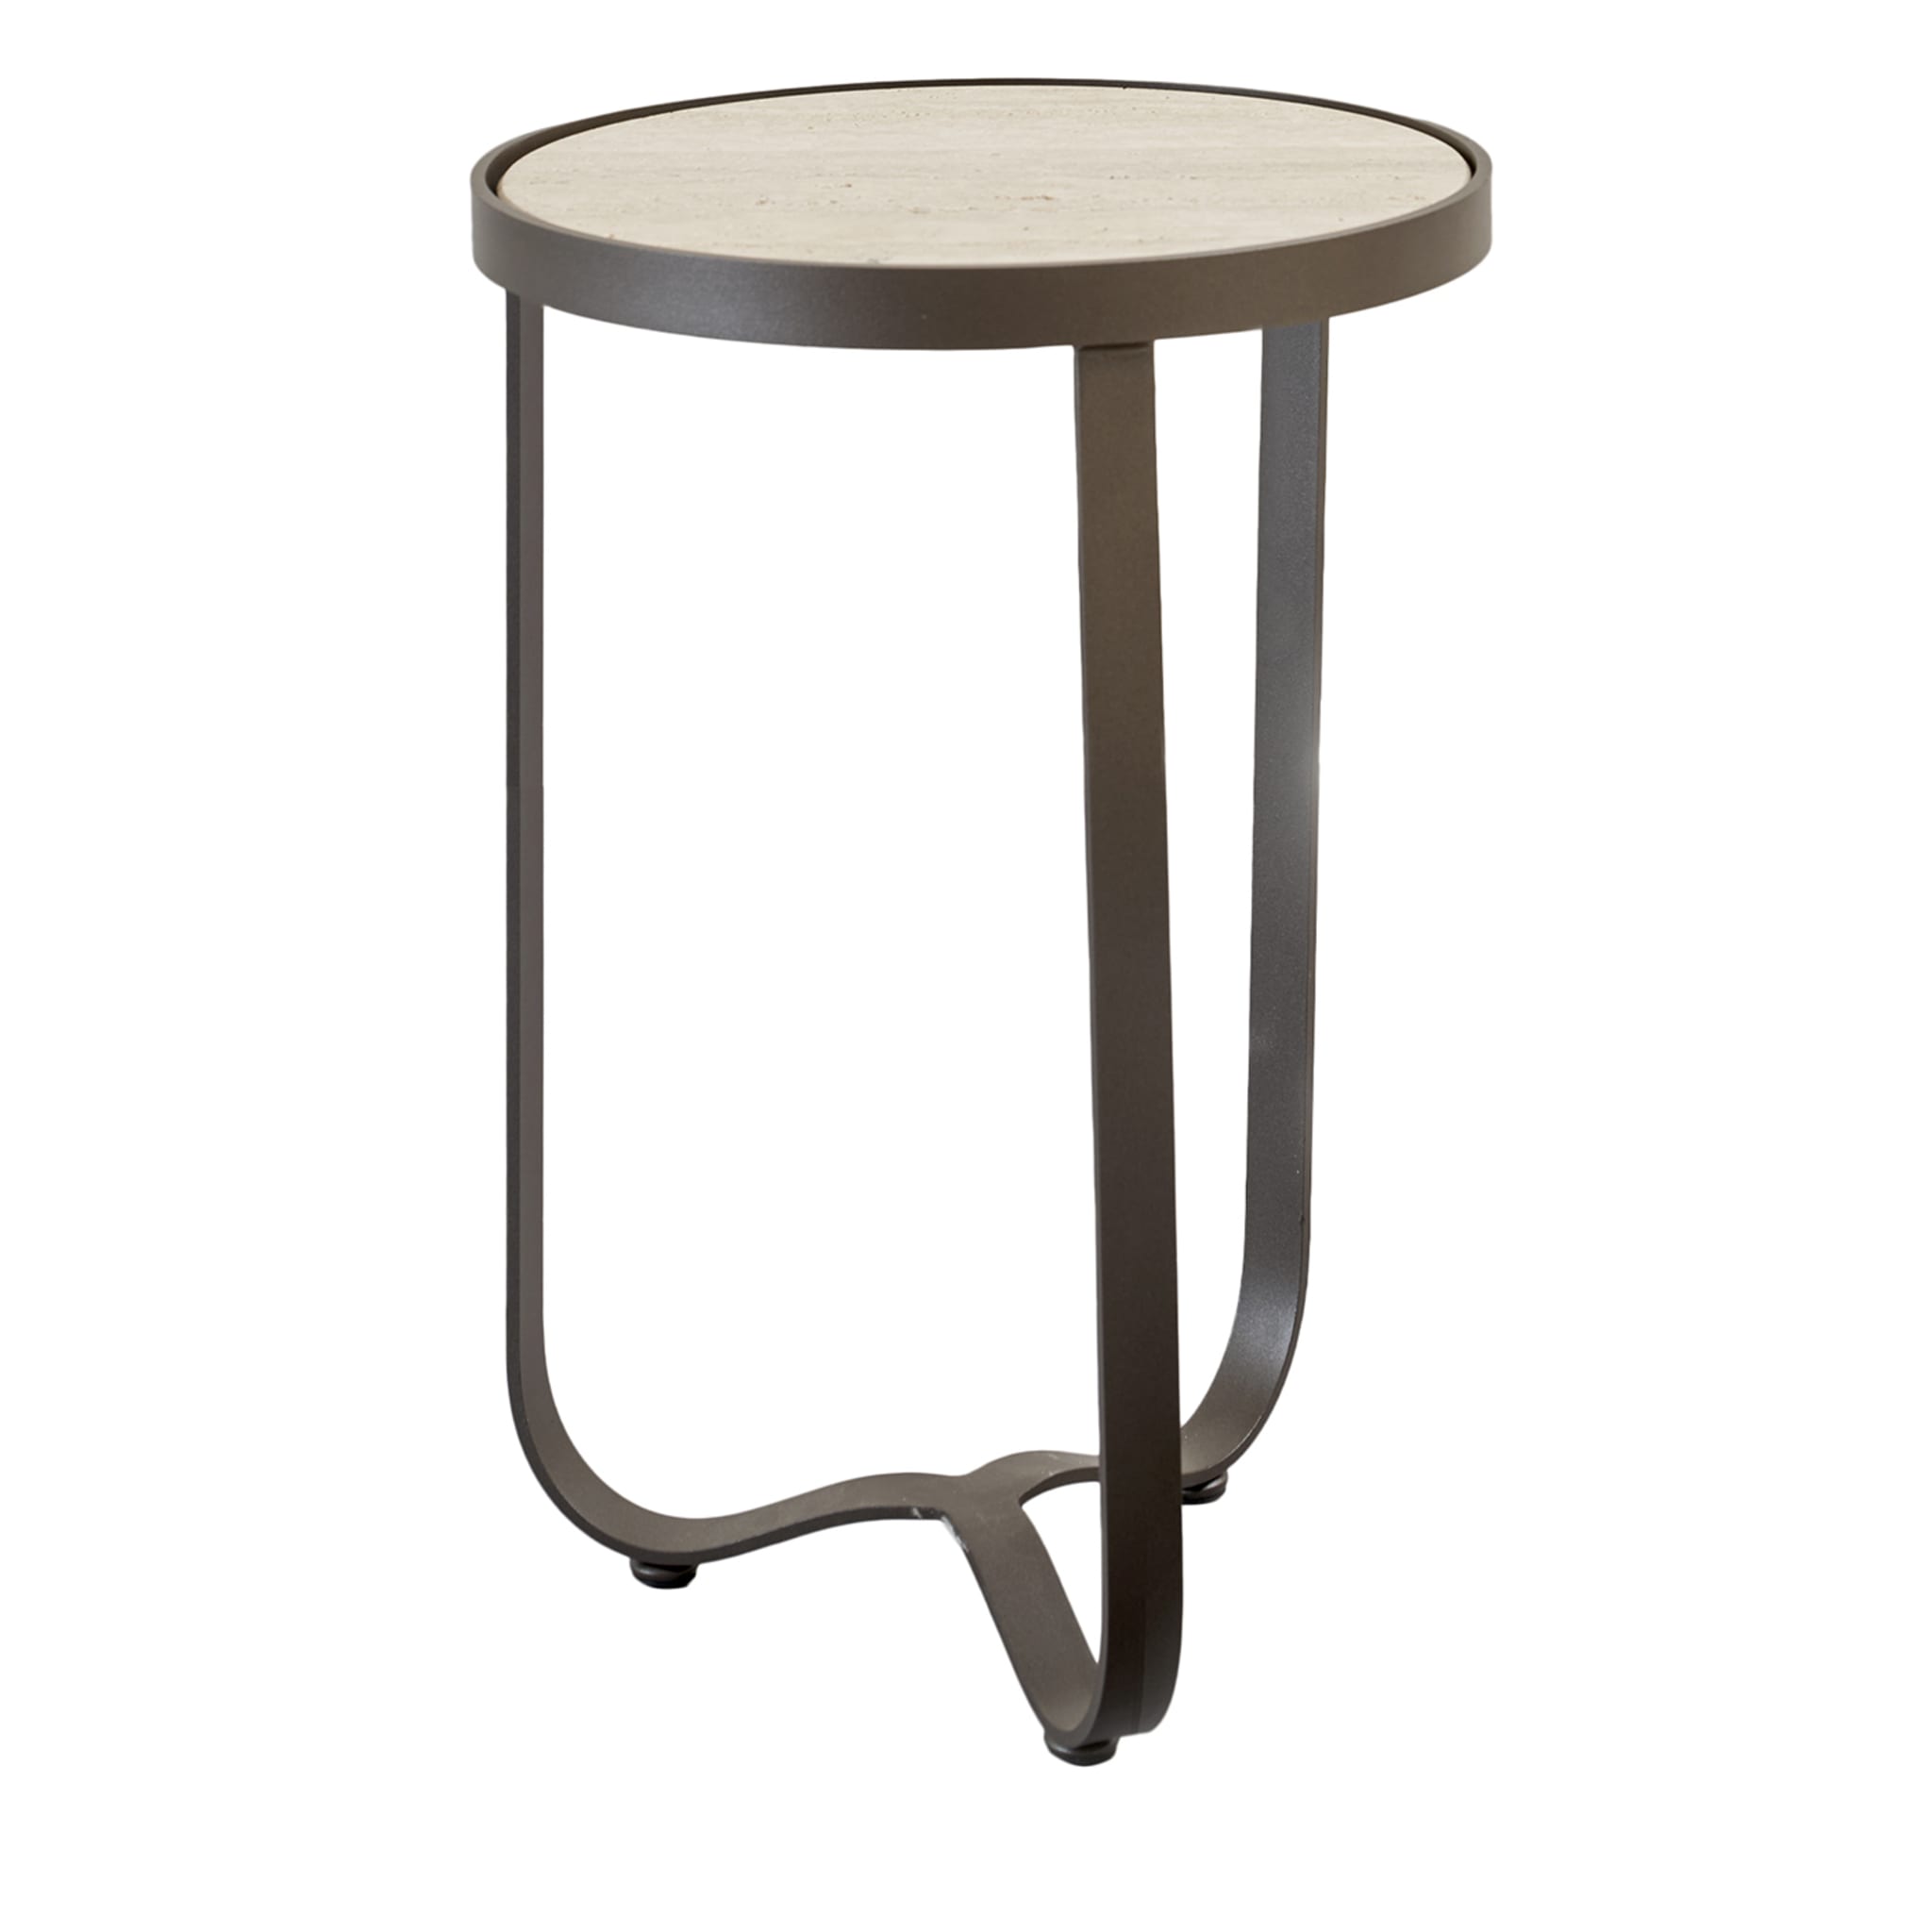 Table d'appoint ronde grise Amalfi par Studio 63 - Vue principale